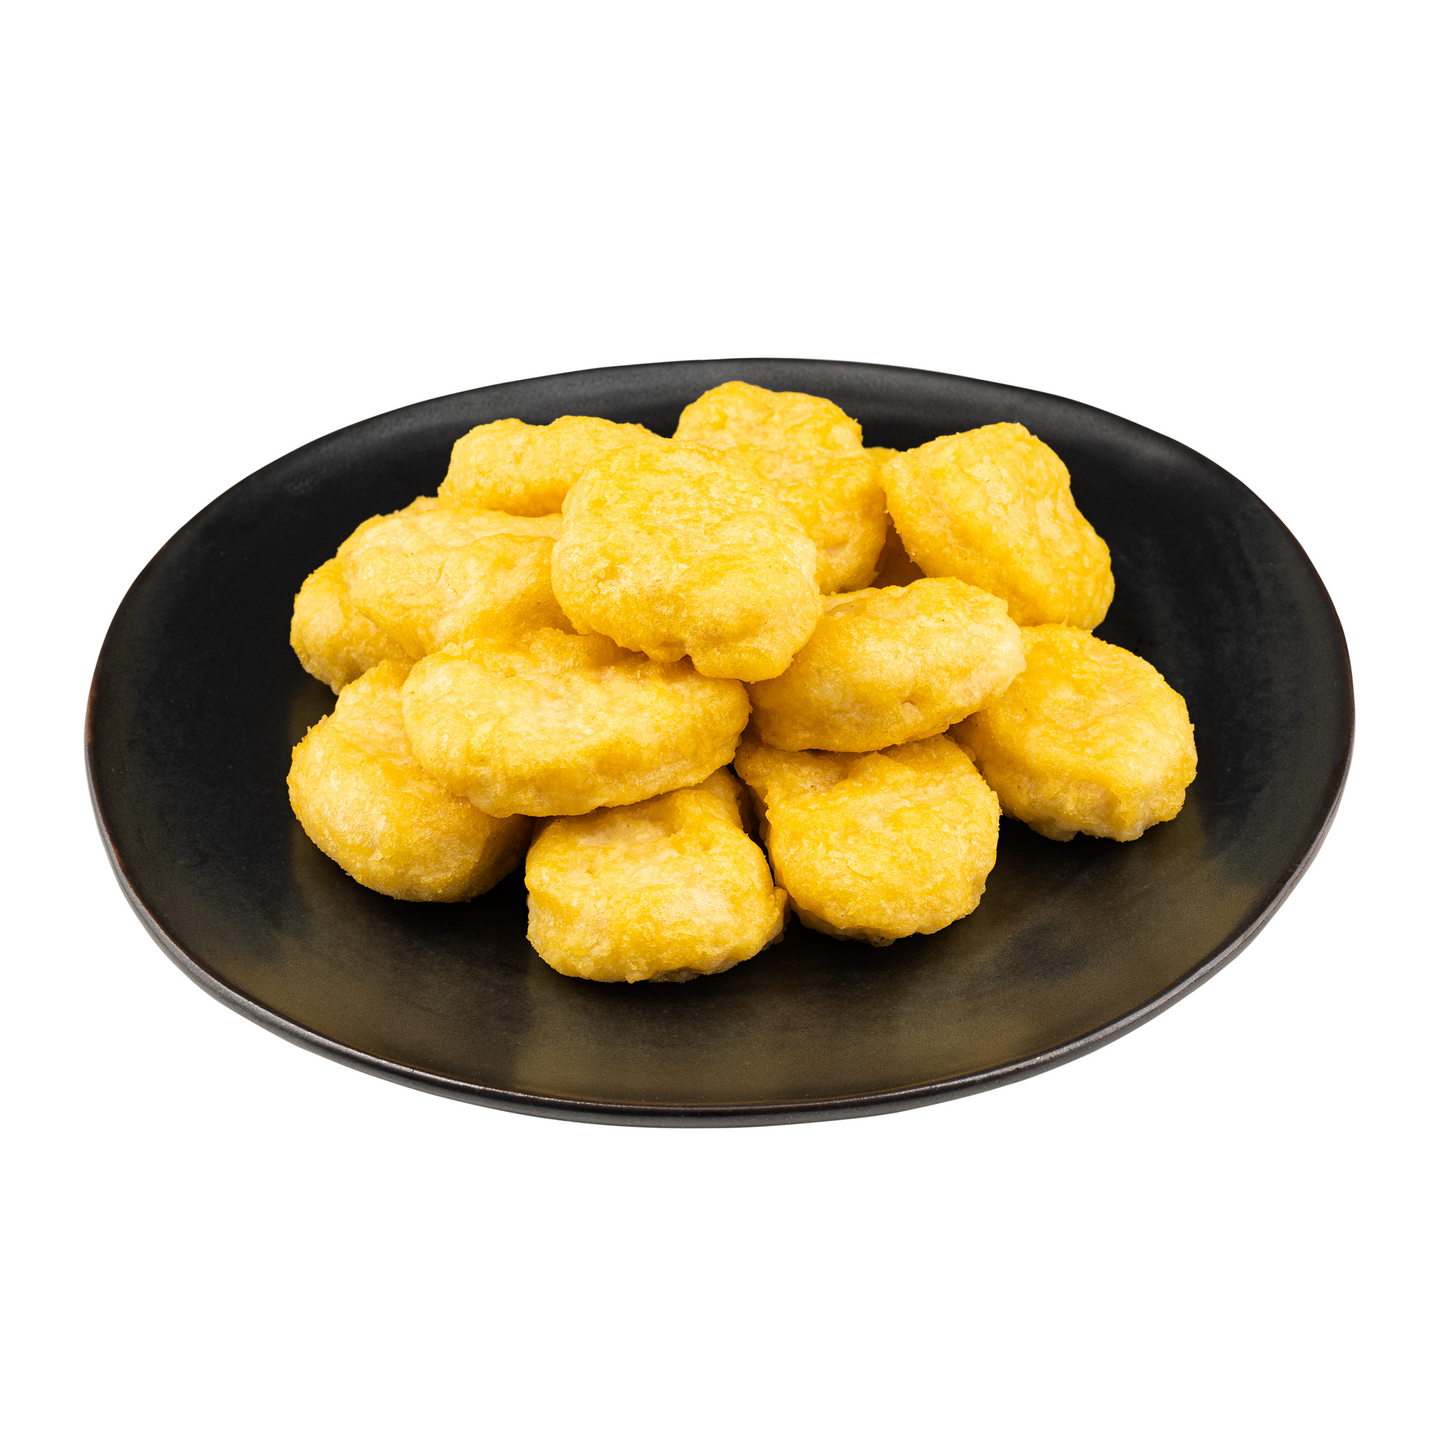 Your chicken nugget n.45 kpl/1000 g pakaste